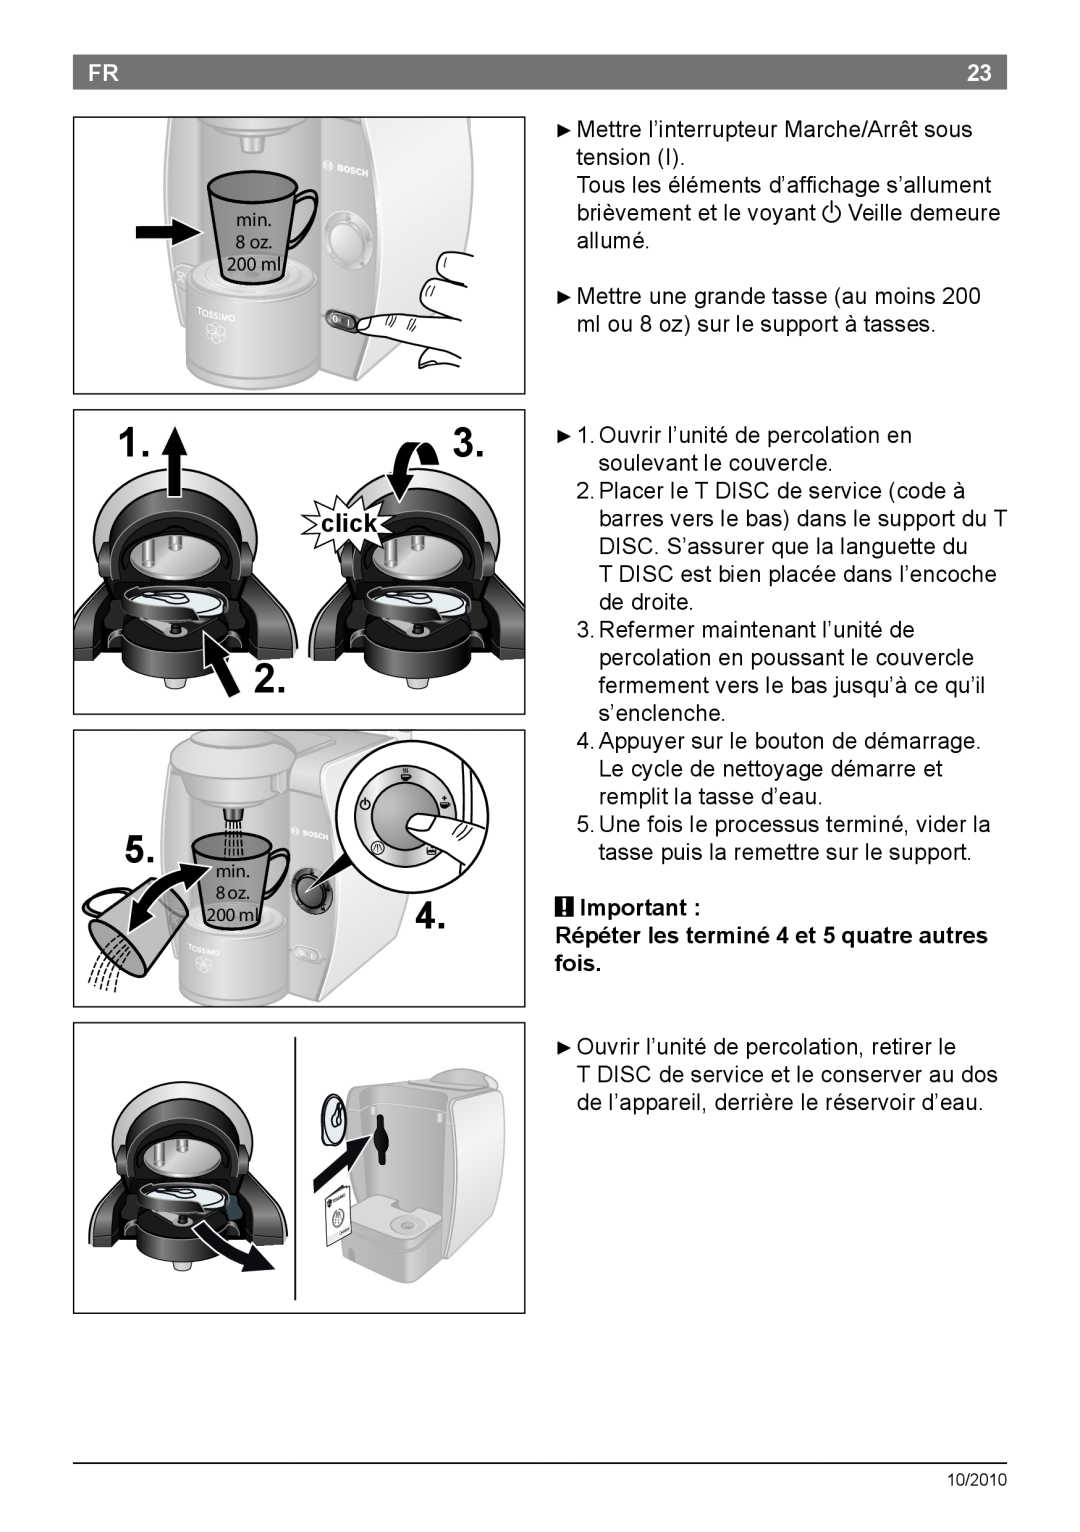 Bosch Appliances T45 instruction manual Important Répéter les terminé 4 et 5 quatre autres fois, click 